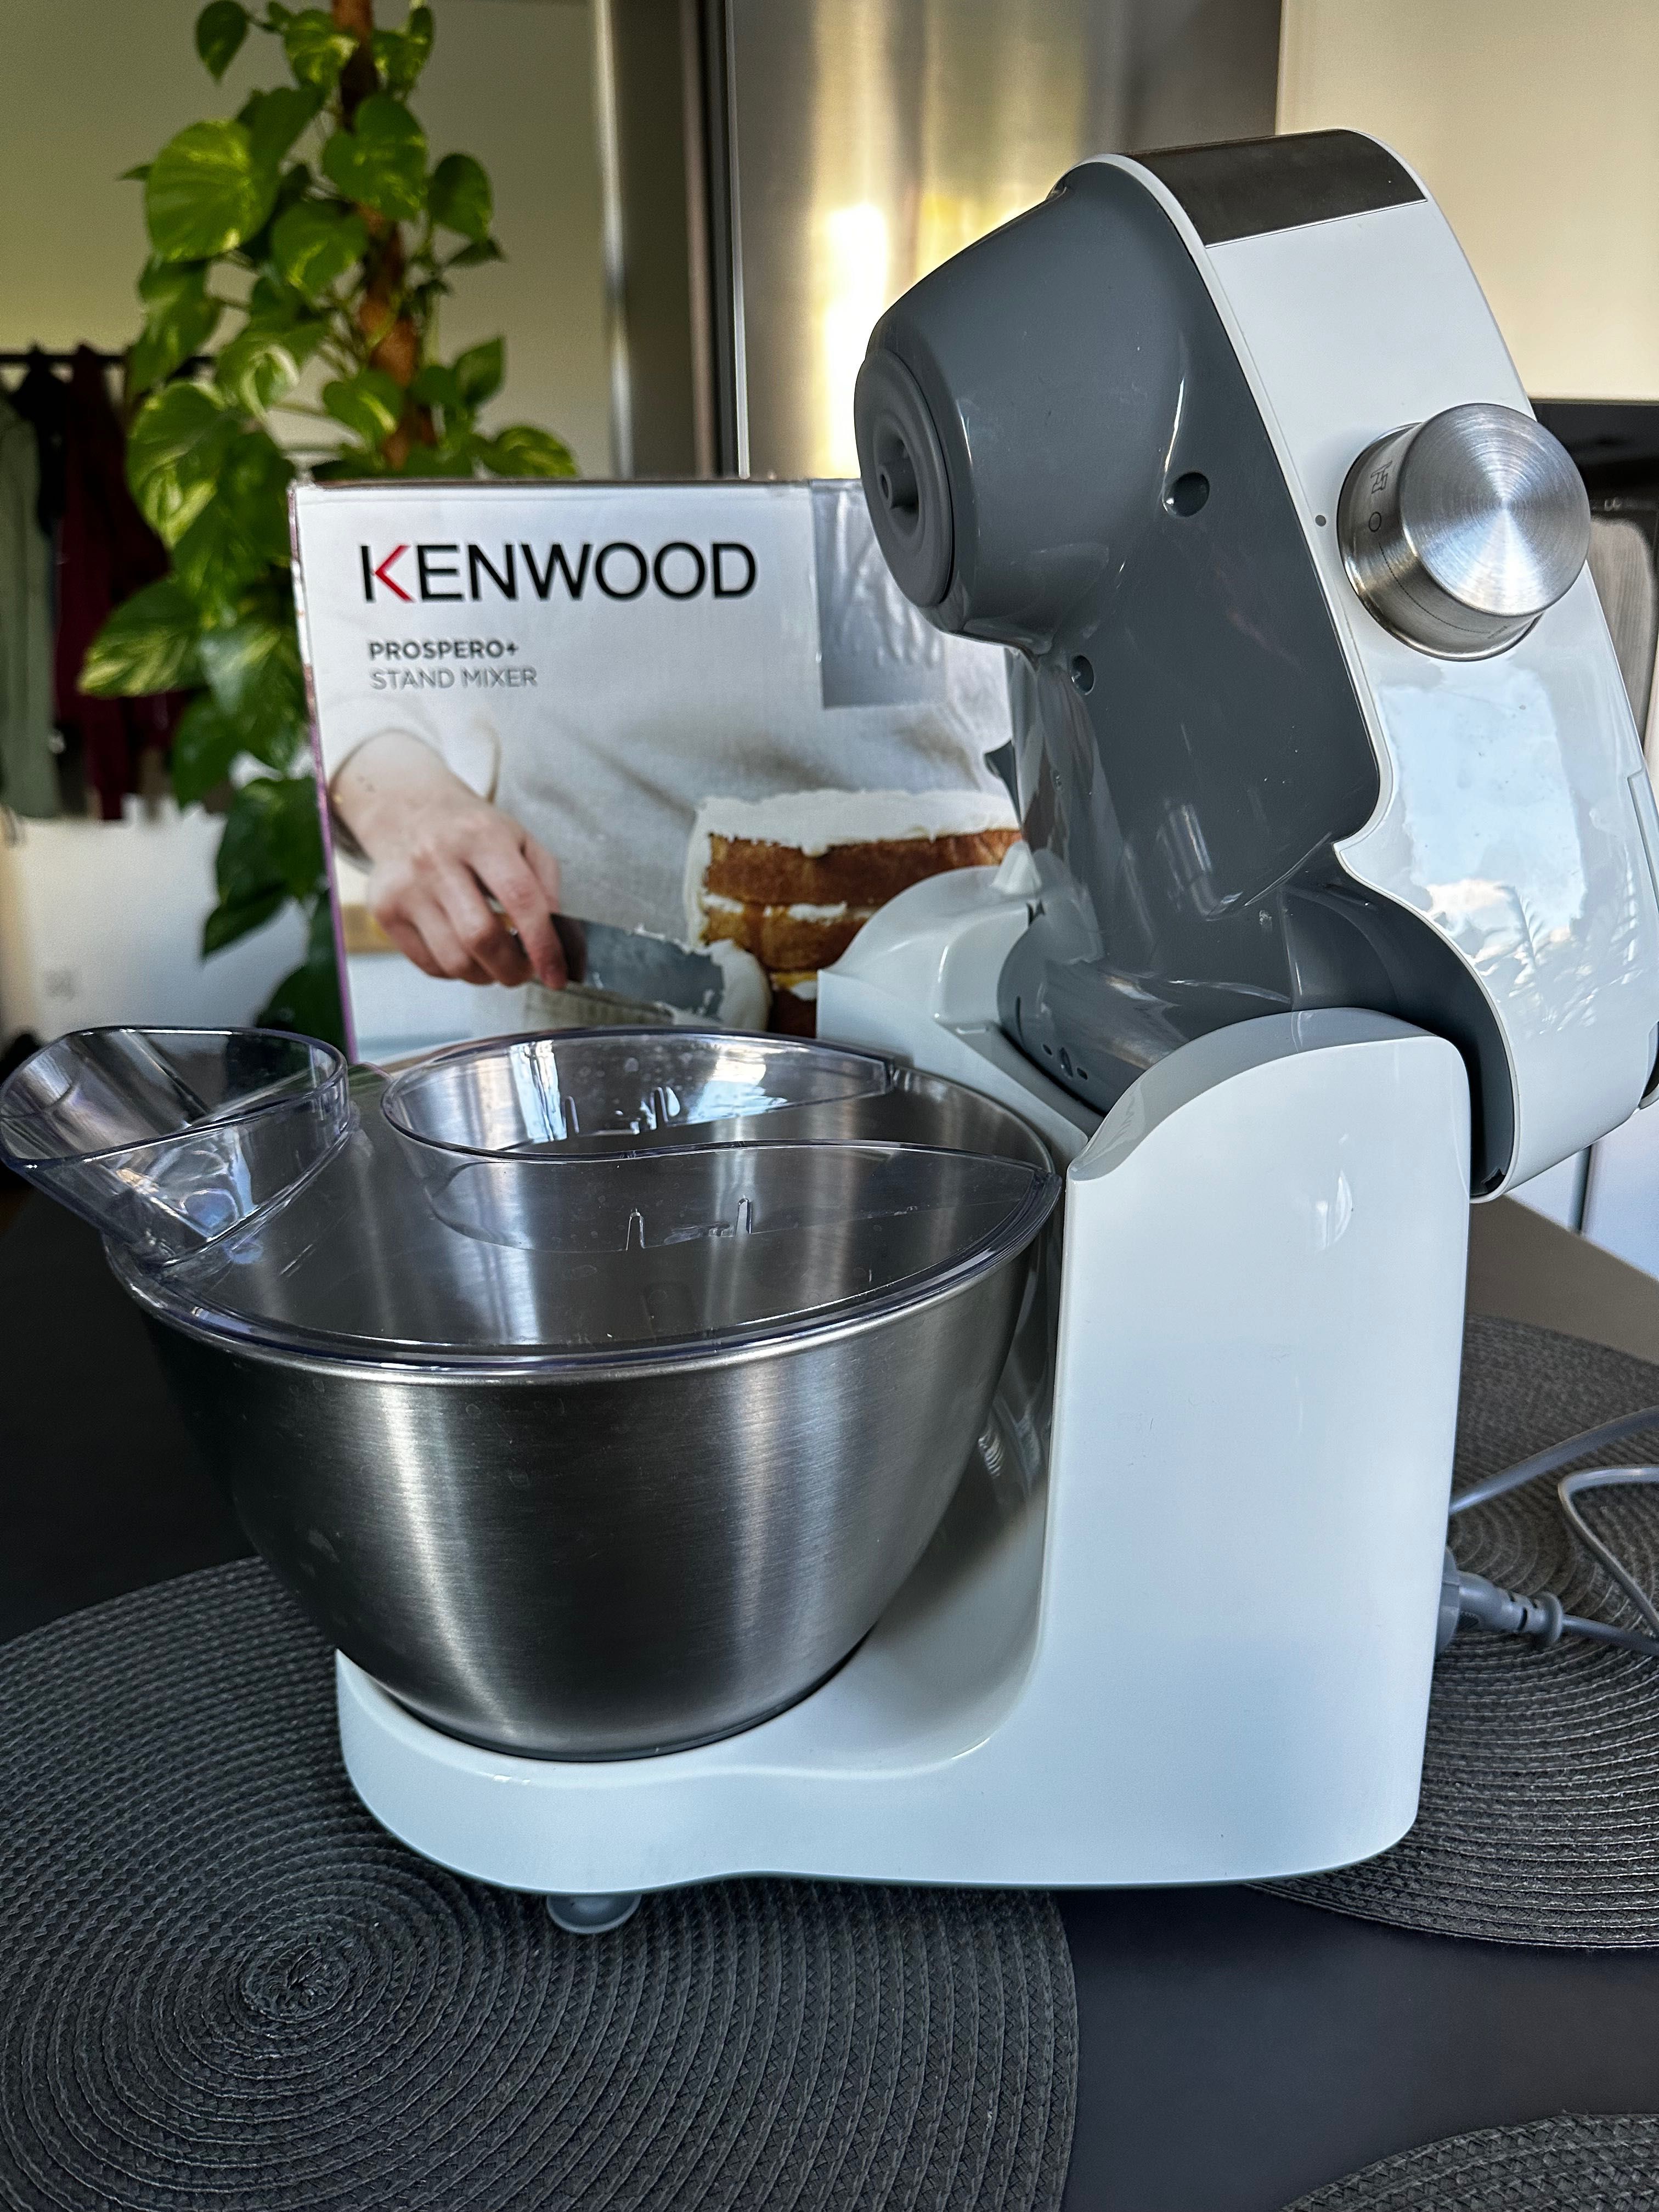 Kenwood Prospero+ 1000W robot kuchenny